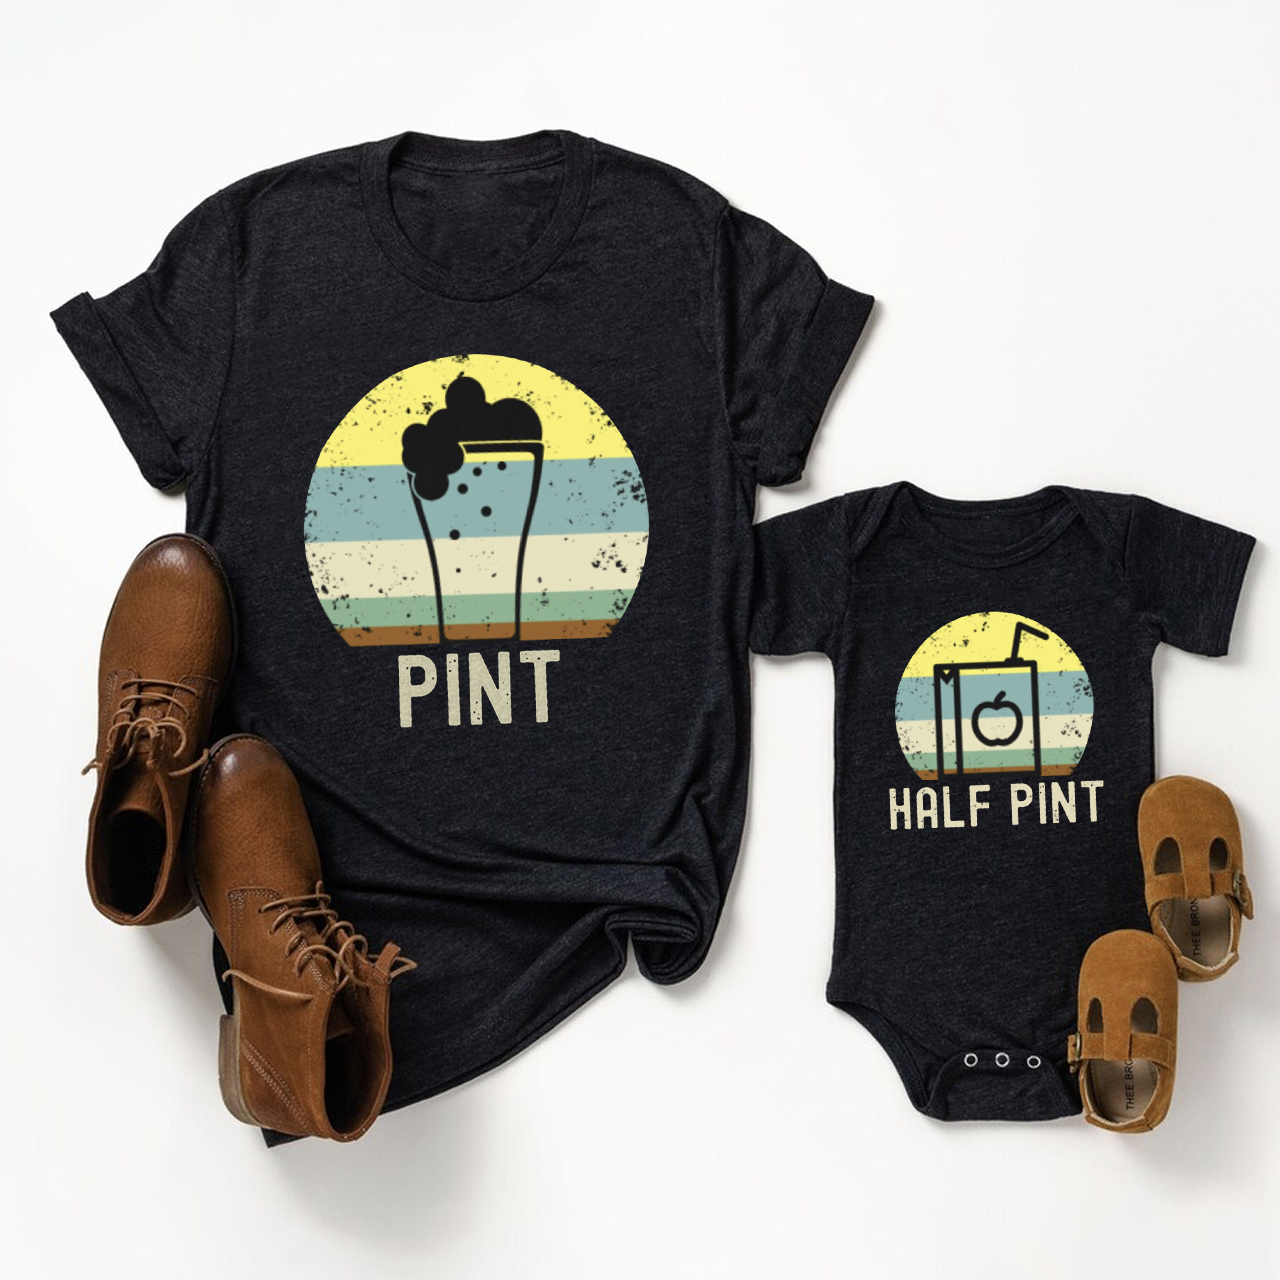 Dad Kid Matching Shirts-"Pint and Half Pint"